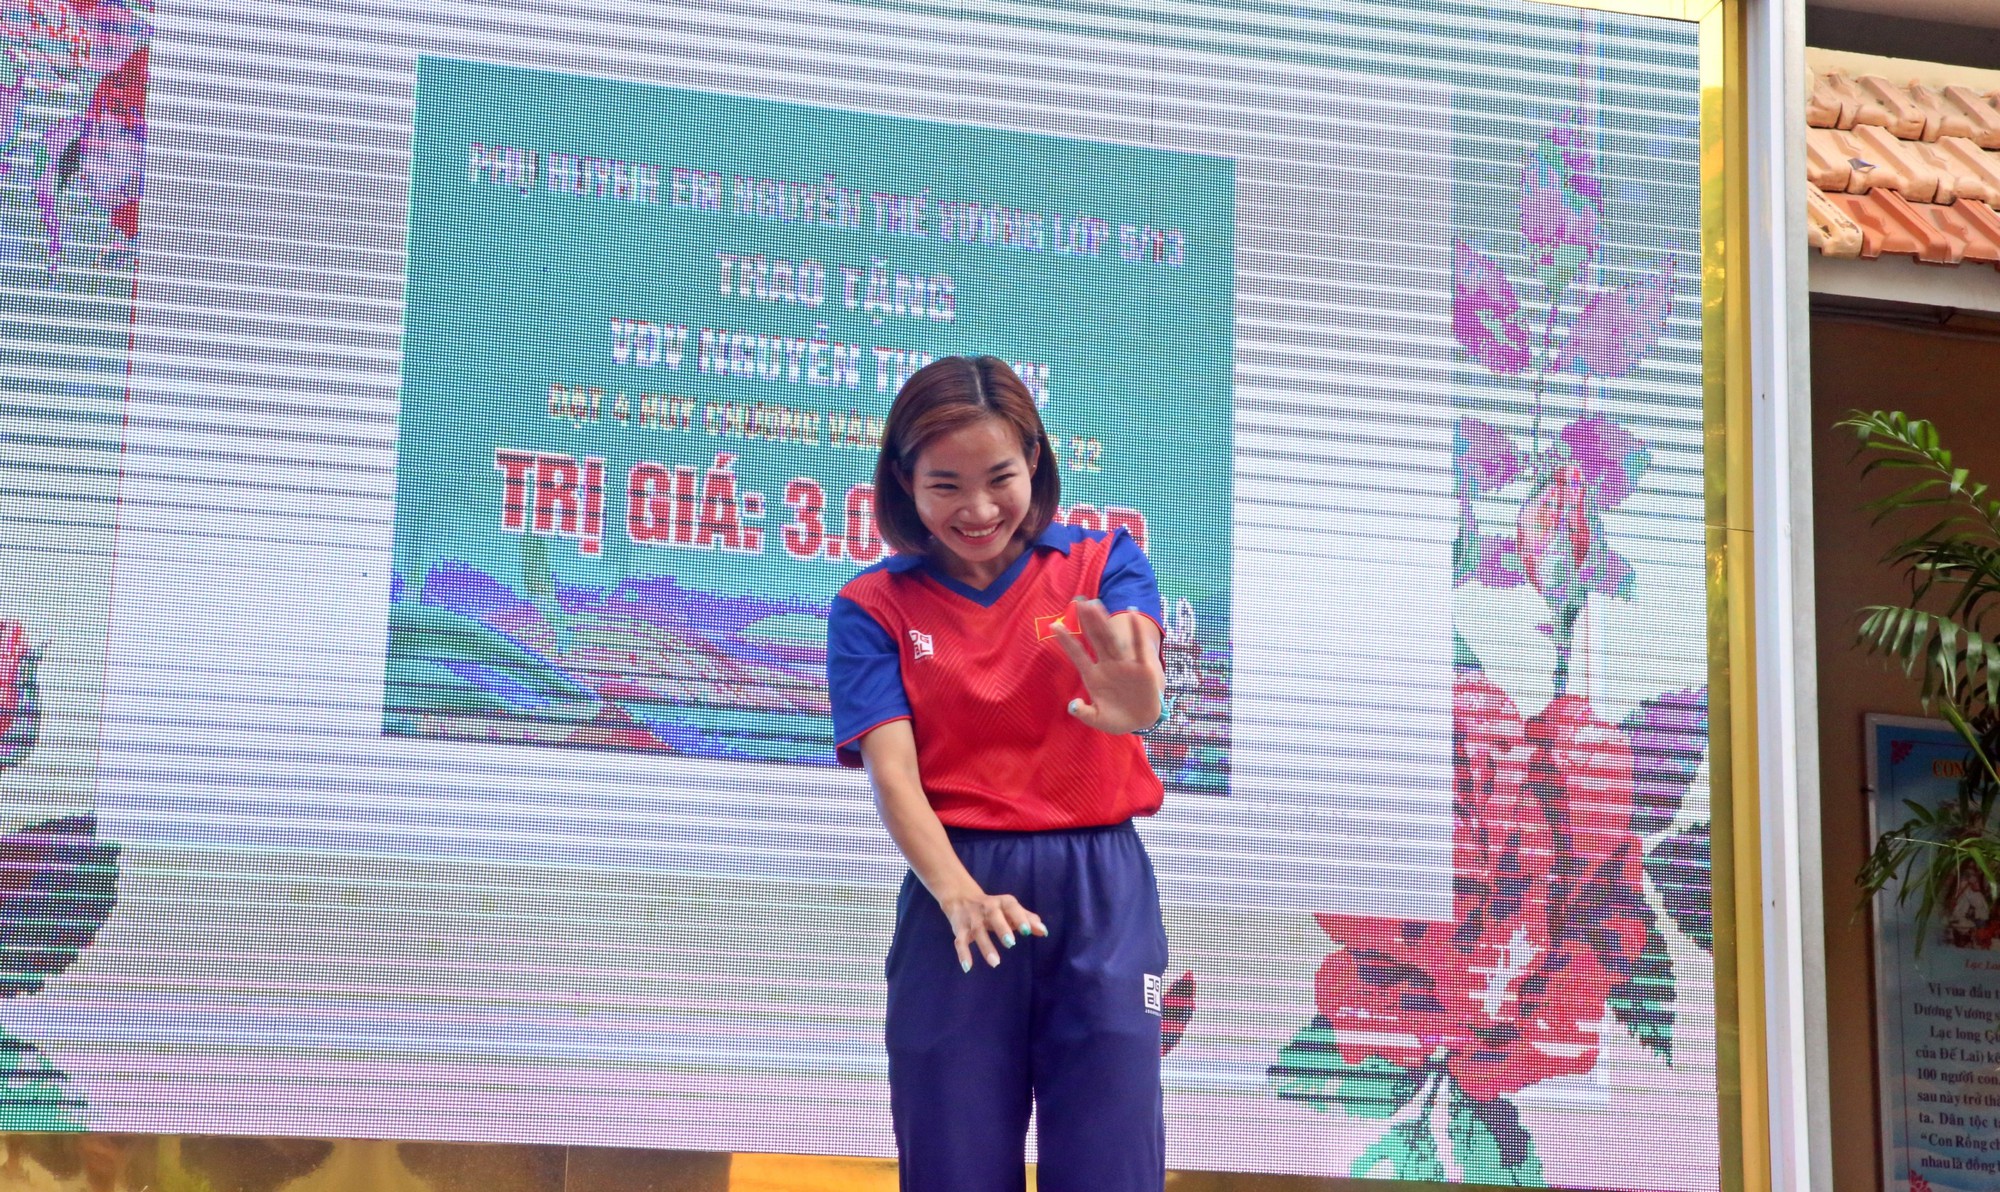 Nguyễn Thị Oanh đến truyền cảm hứng cho các bạn nhỏ trường Nguyễn Thượng Hiền, TP.HCM - Ảnh 6.